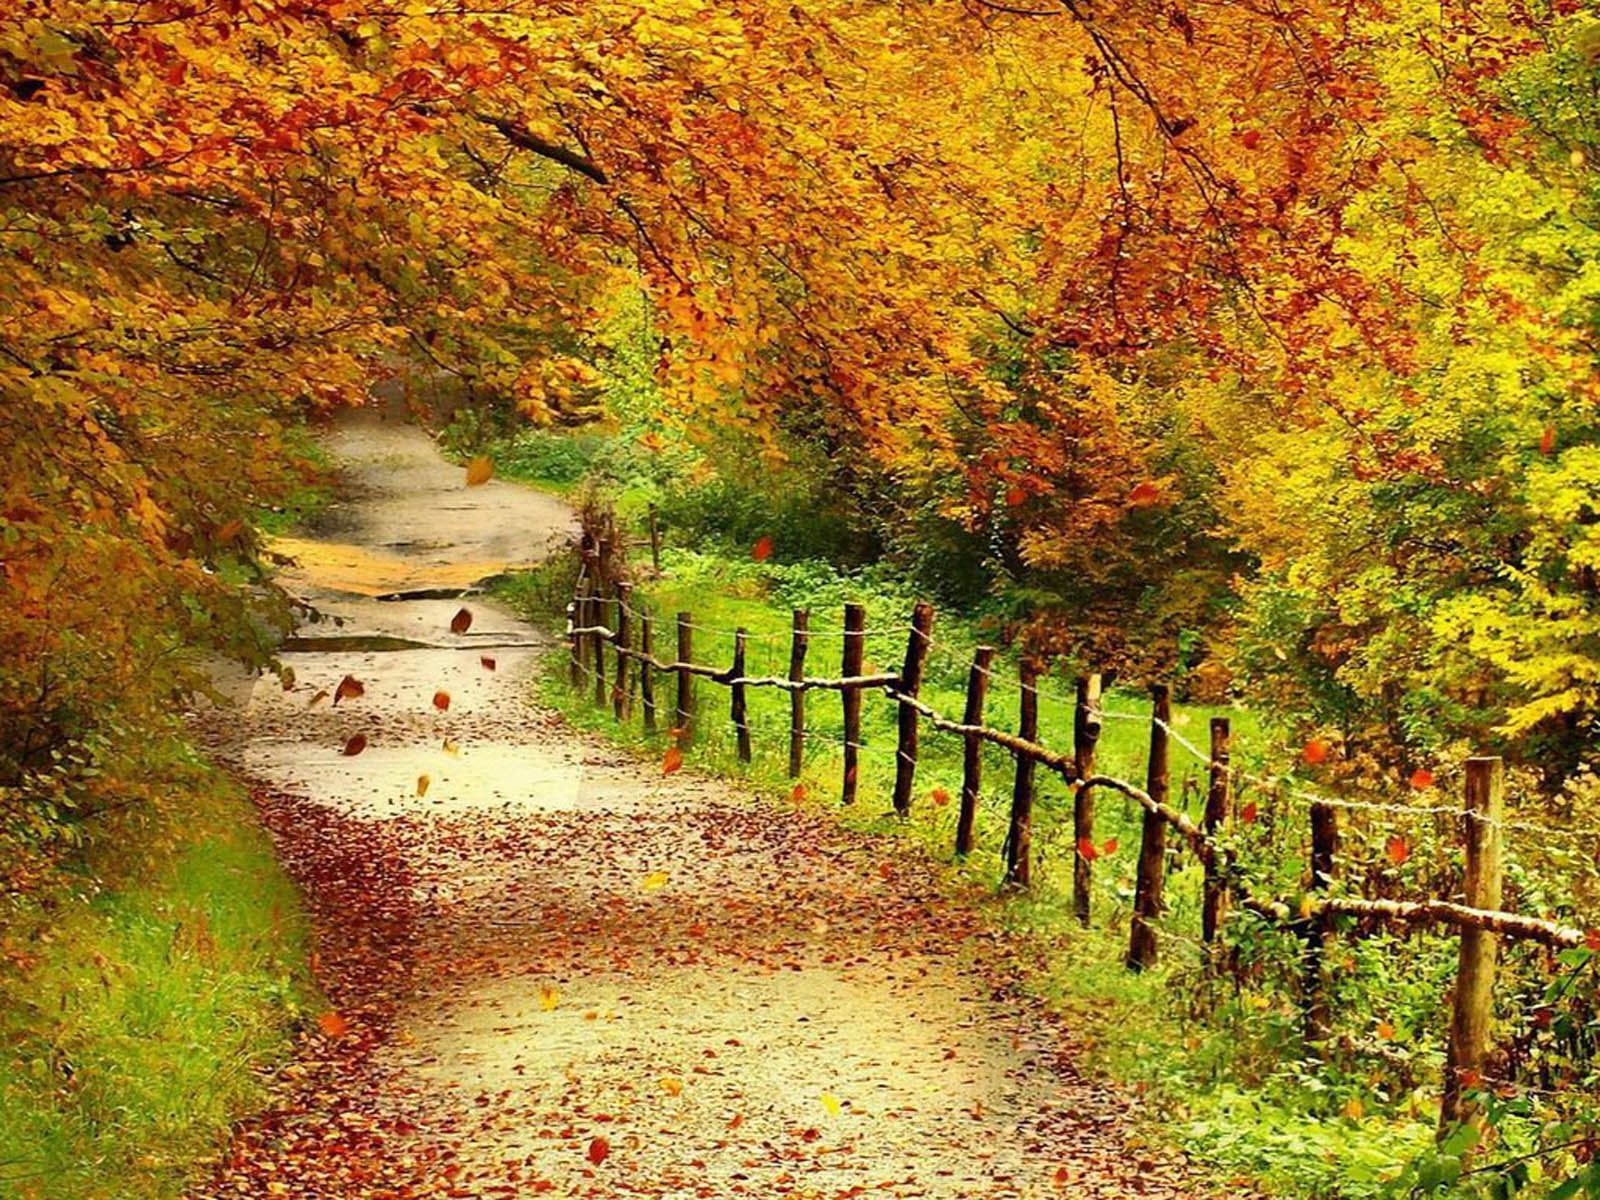 Phong cảnh – Tận hưởng những kỳ nghỉ mùa thu đầy mê hoặc với các bức ảnh phong cảnh mùa thu tuyệt đẹp, giúp bạn nhìn lại thiên nhiên trong tinh thần yên bình nhất!